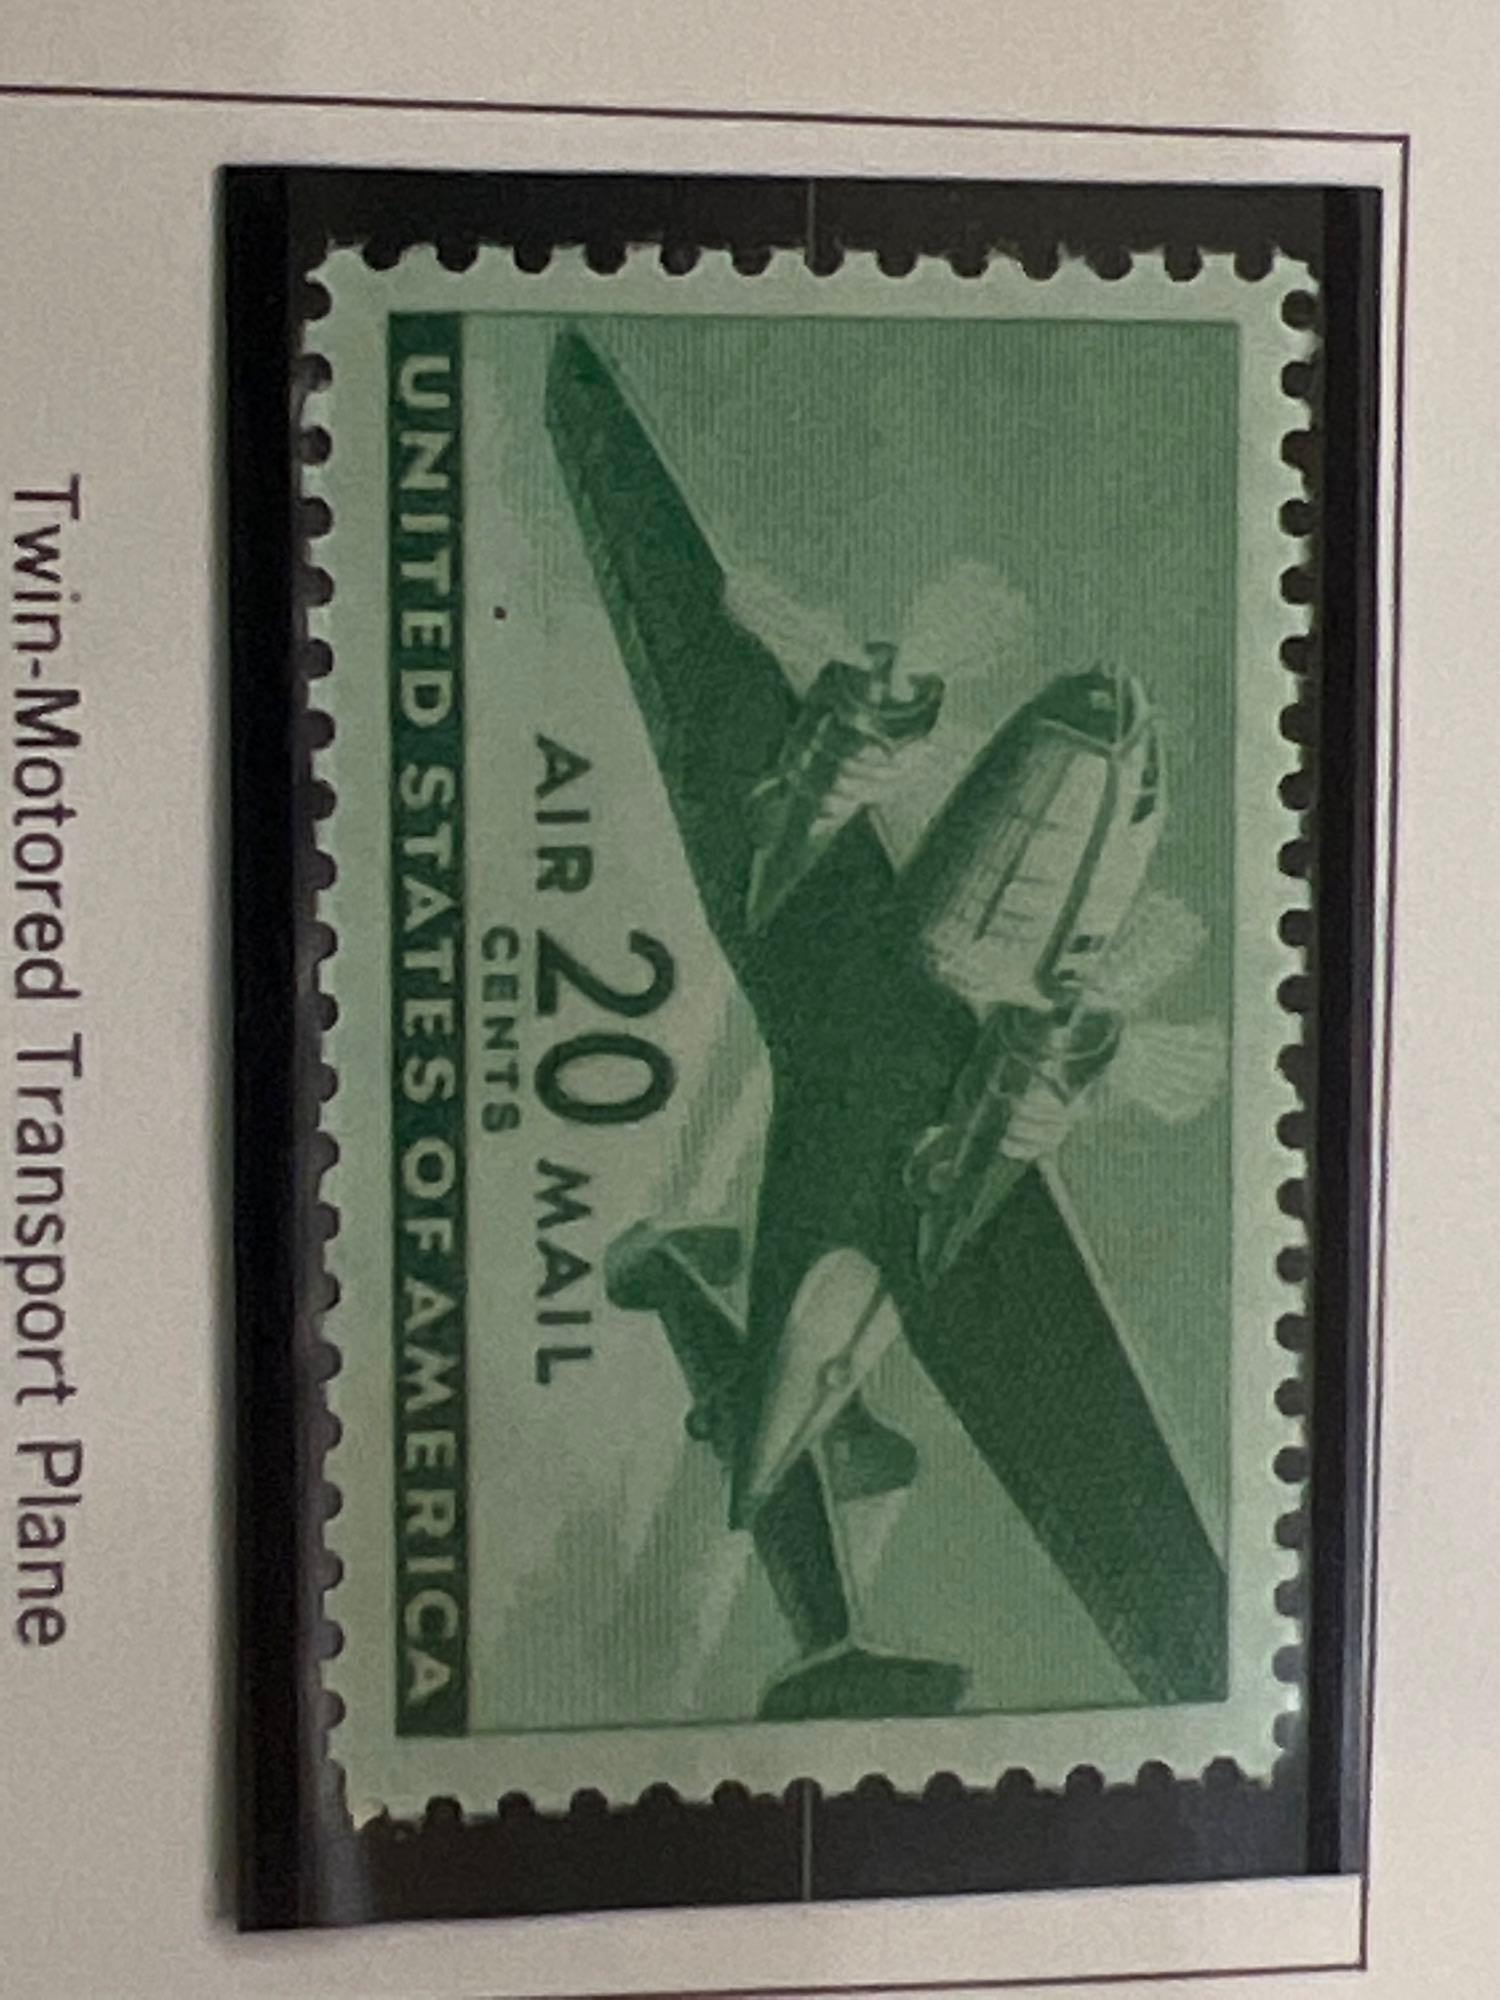 1941-44 Airmails